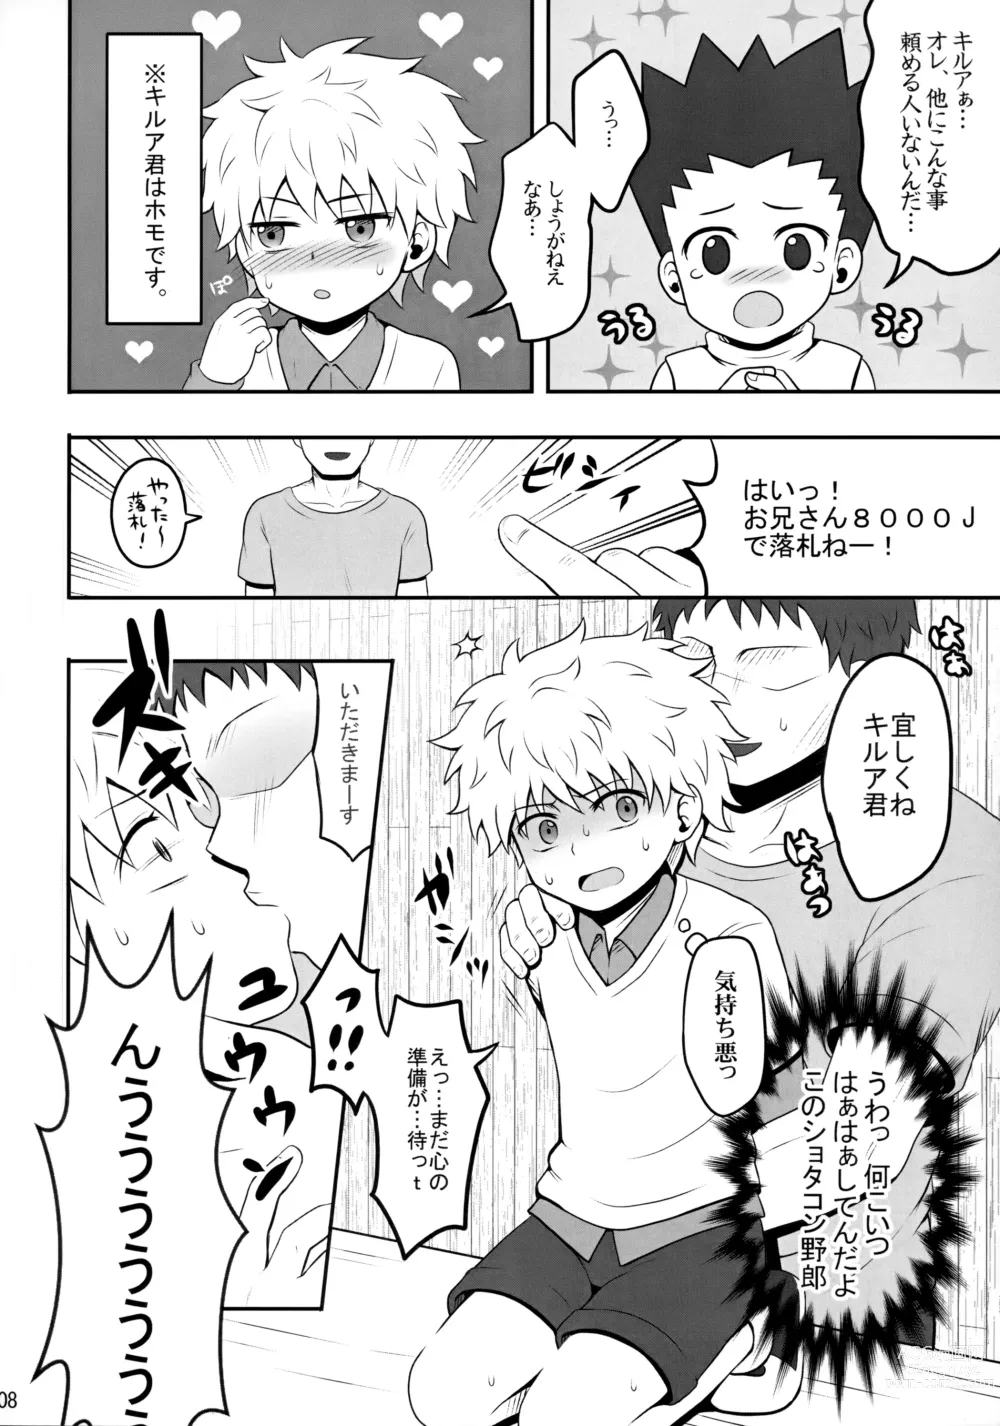 Page 7 of doujinshi Sannan ga Ecchi na Jouken Kyoubai ni Deru Ohanashi.